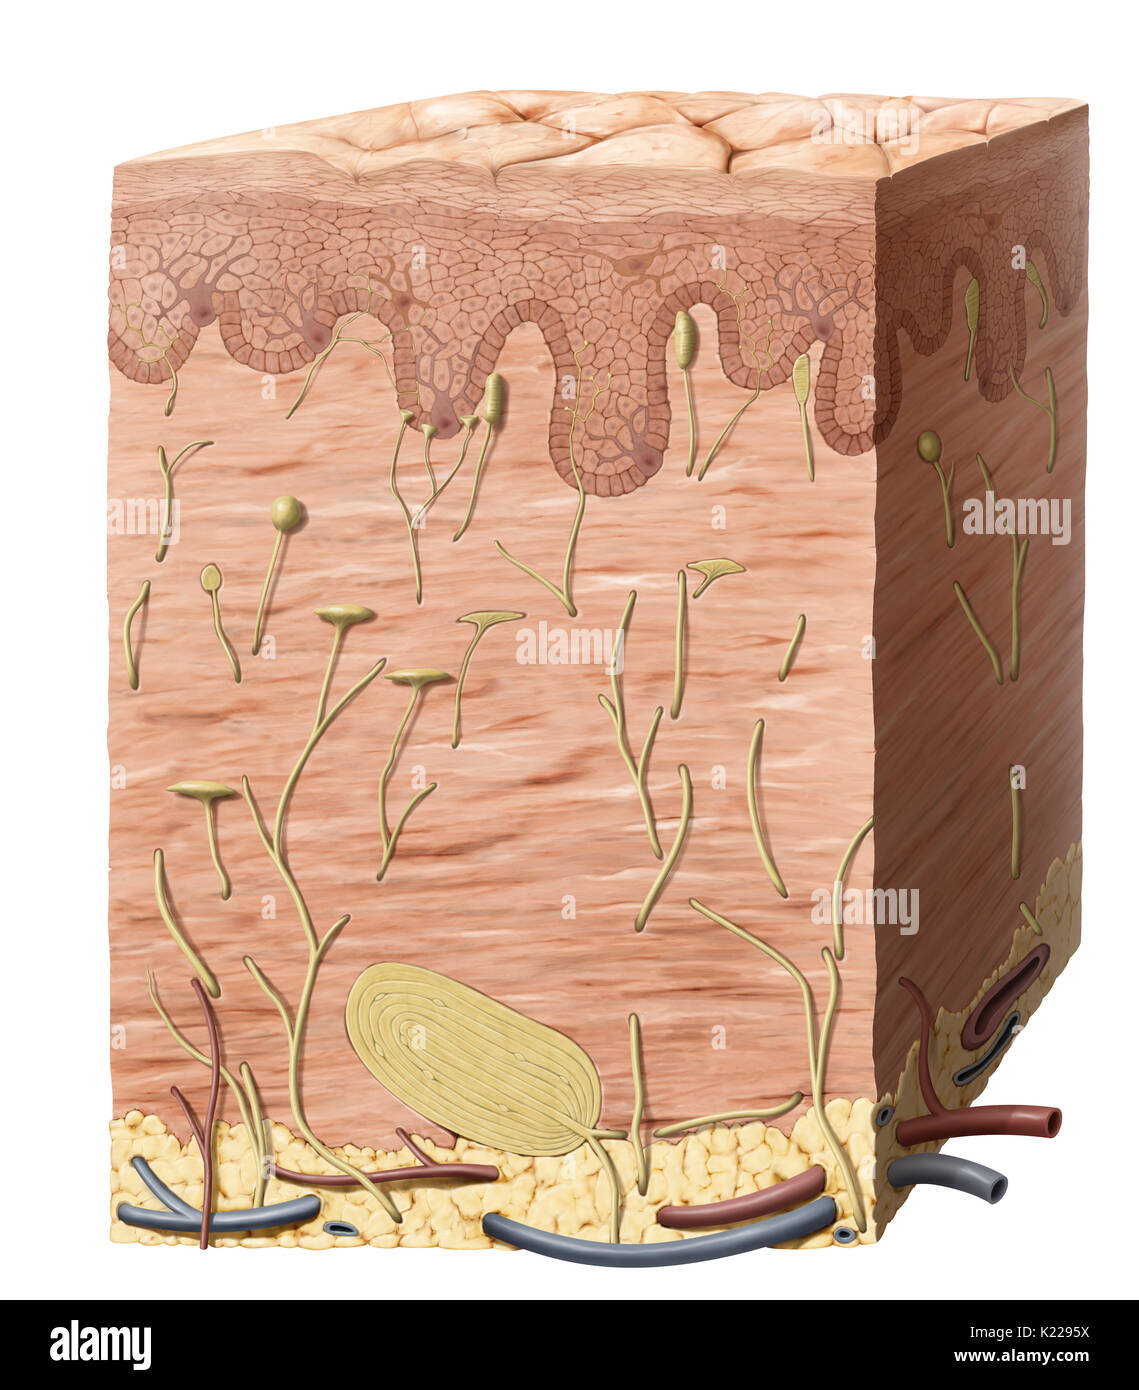 Enveloppe de protection externe du corps, composé de trois couches principales : l'épiderme, le derme et l'hypoderme ou tissu sous-cutané. Banque D'Images